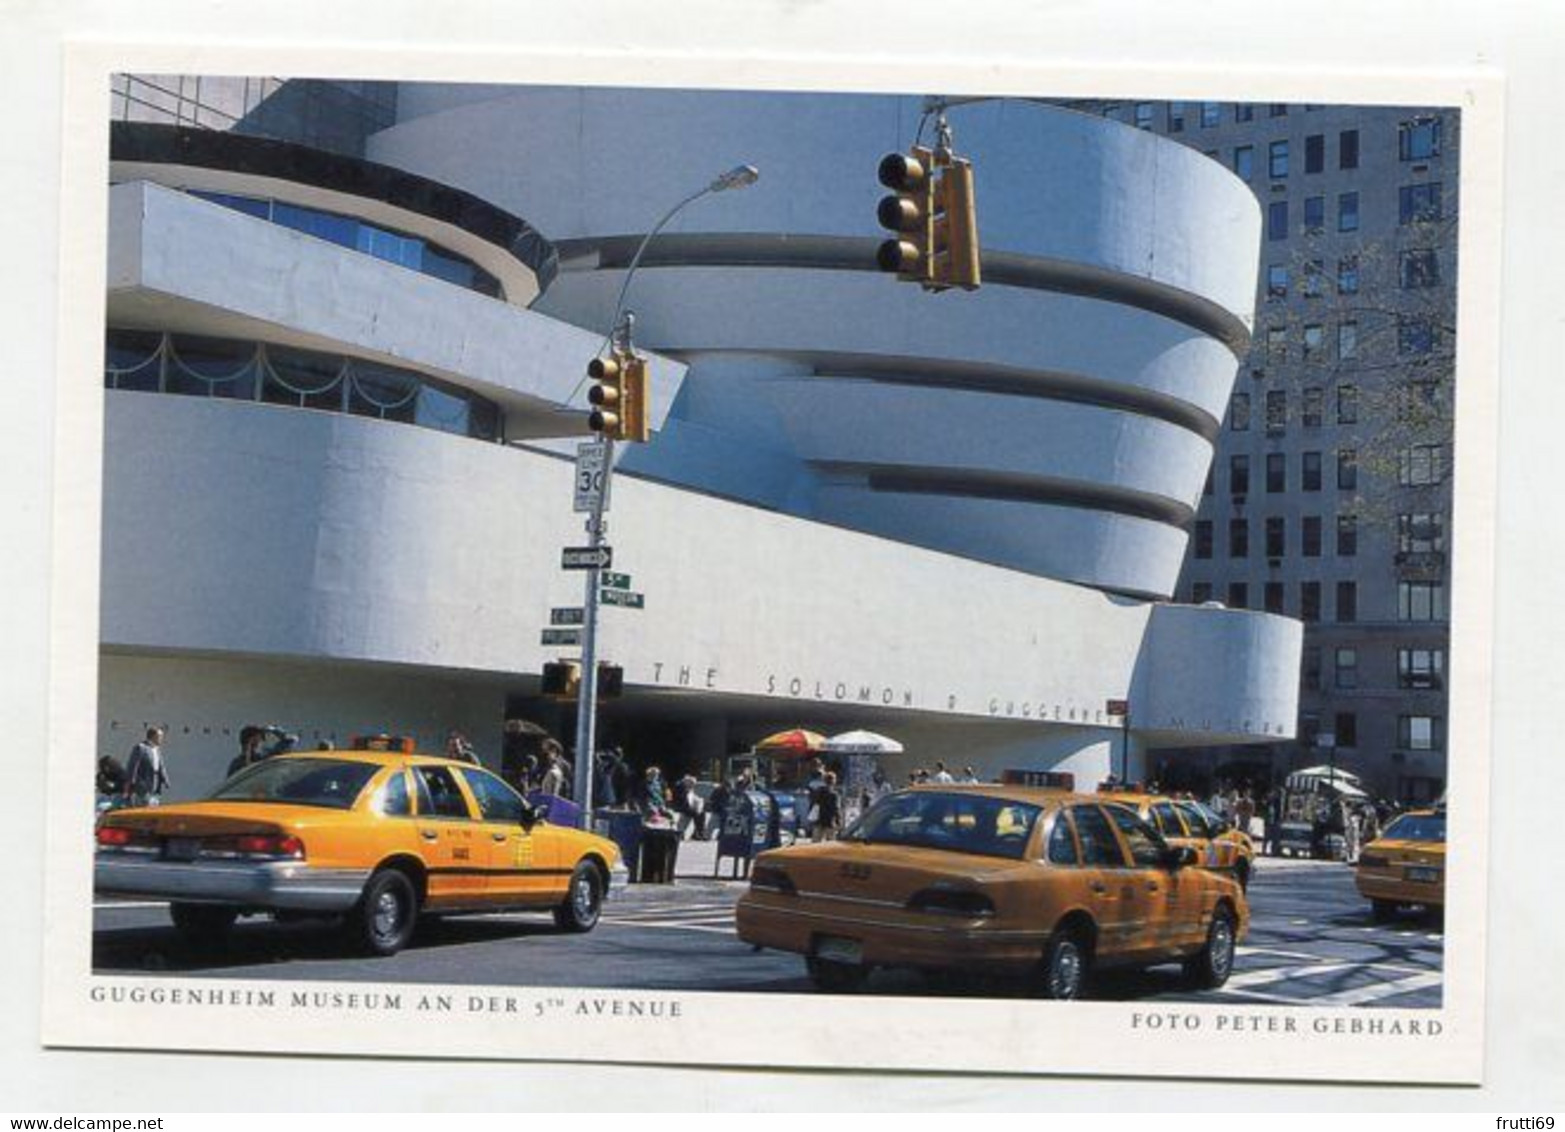 AK 074675 USA - New York City - Guggenheim Museum An Der 5th Avenue - Musées